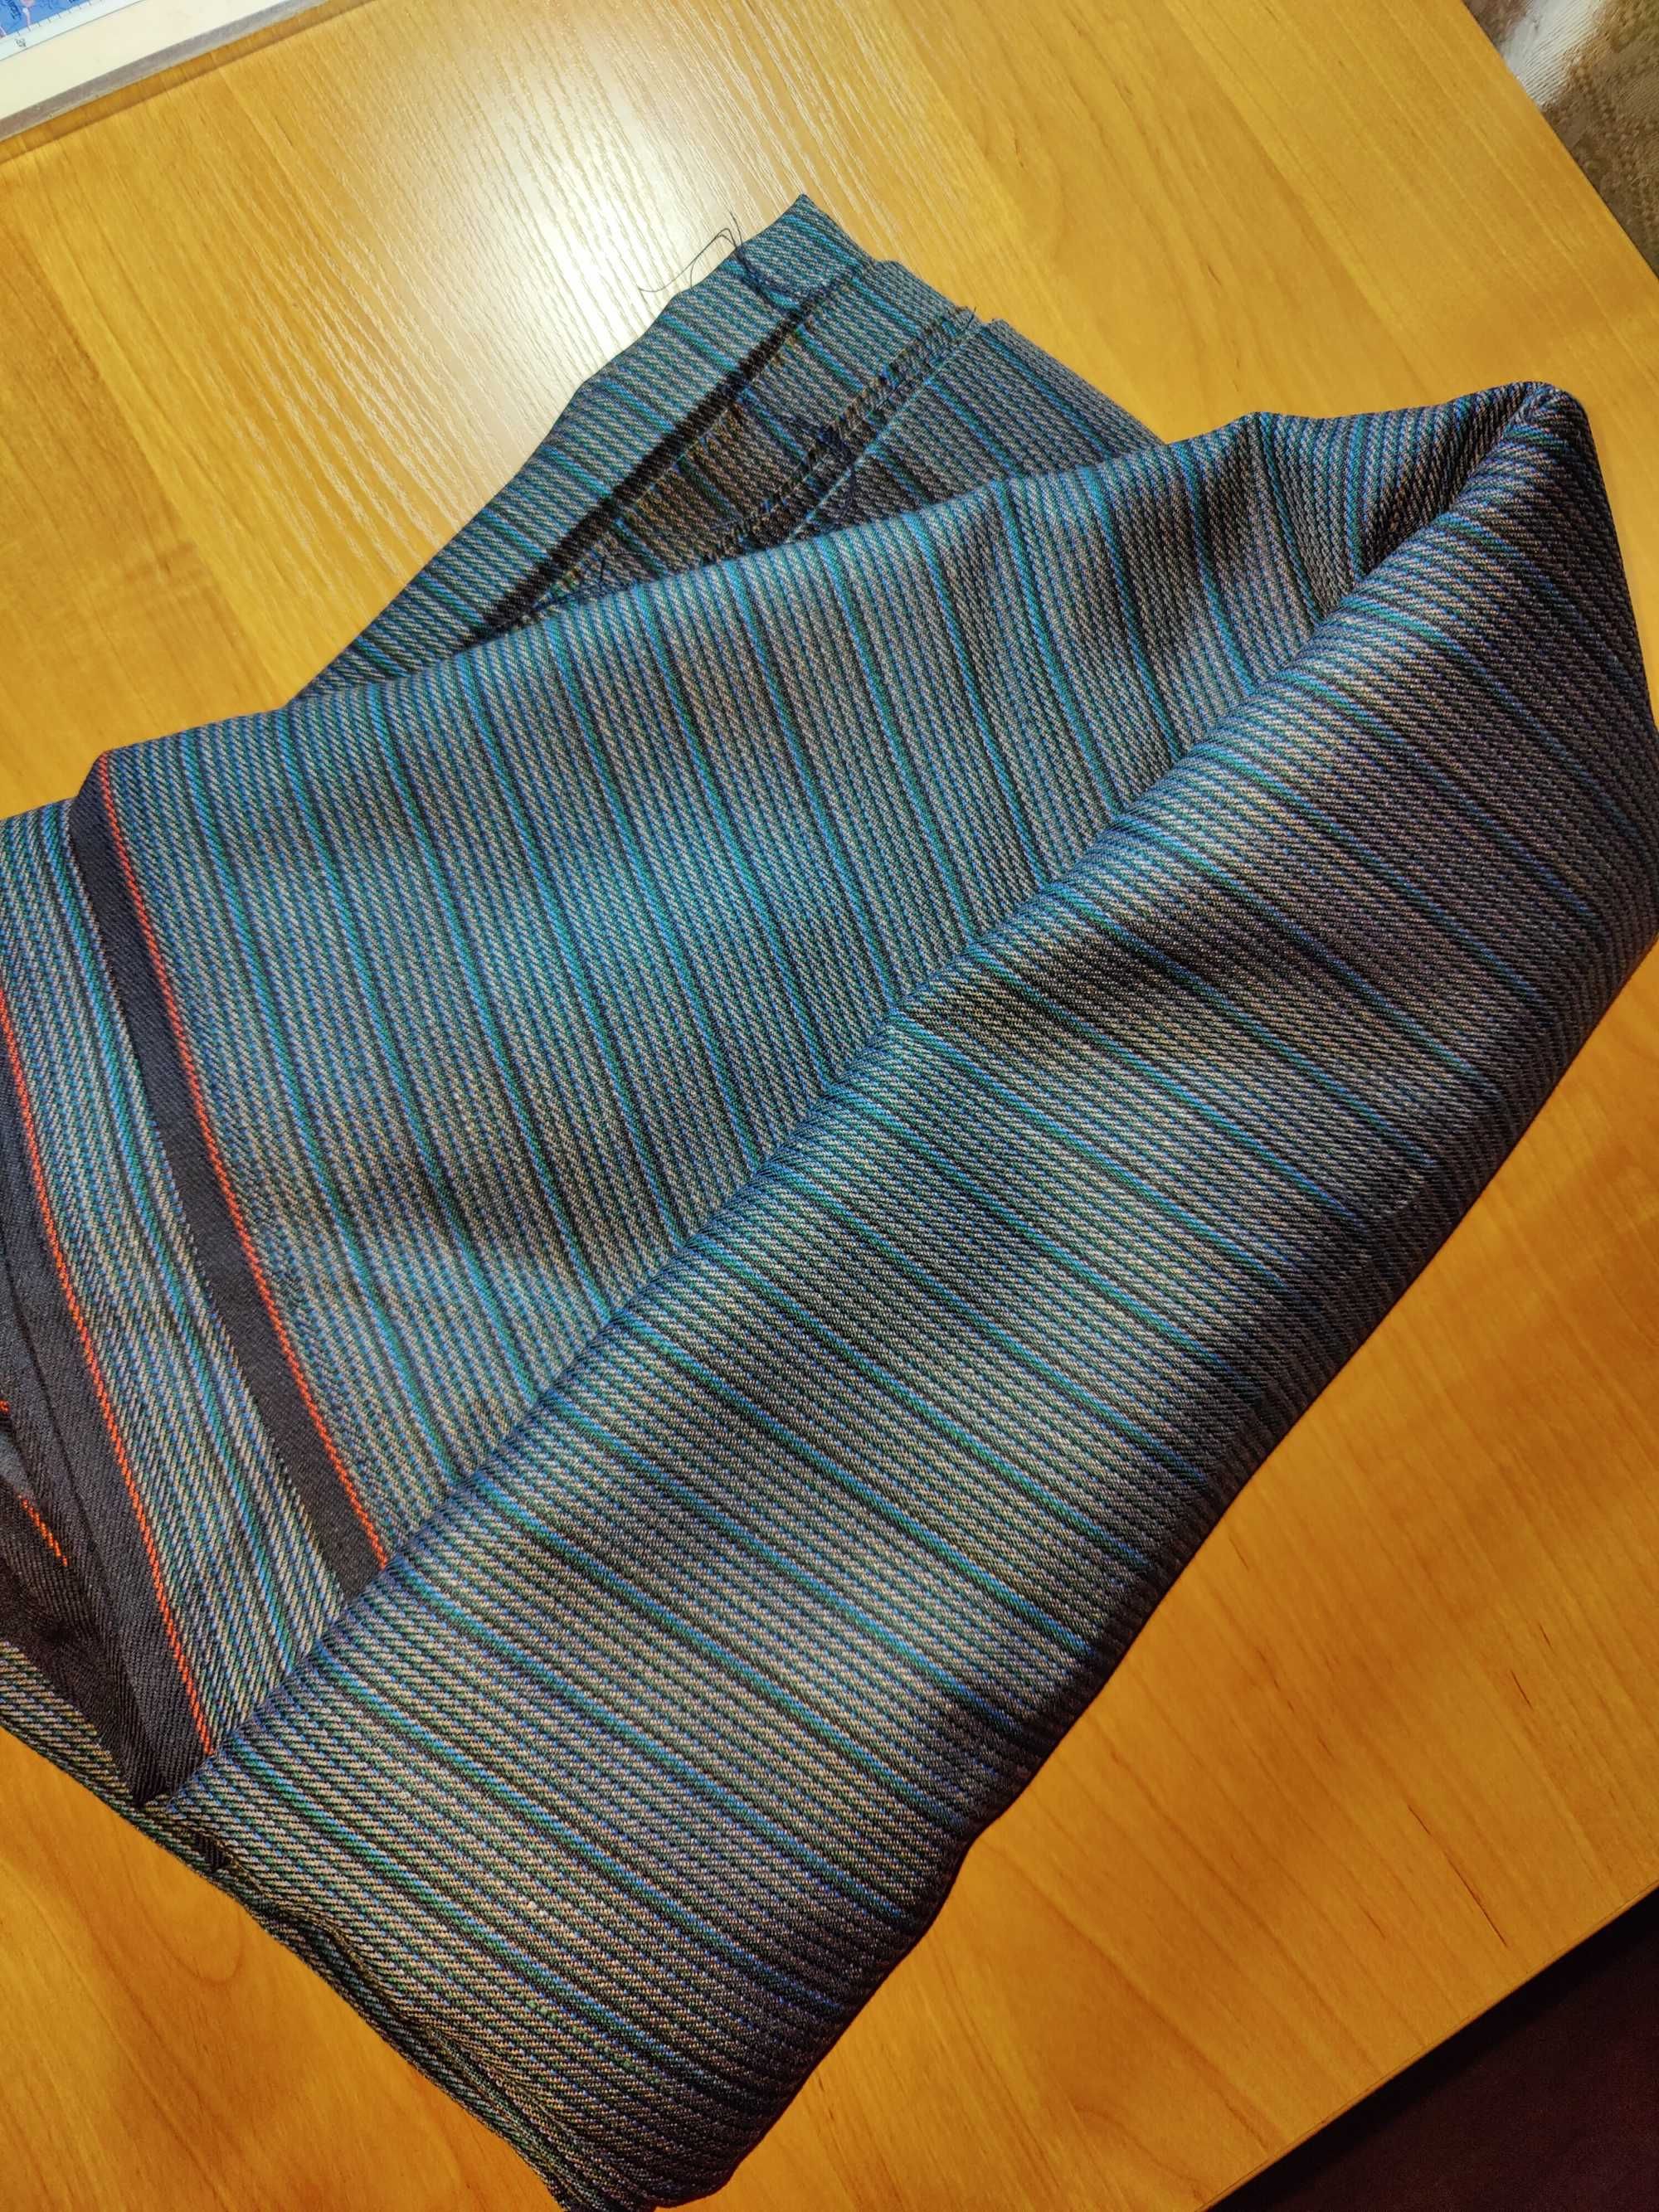 Ткань серая/синяя для костюмов, юбок, в полоску, клетку, деловая ткань